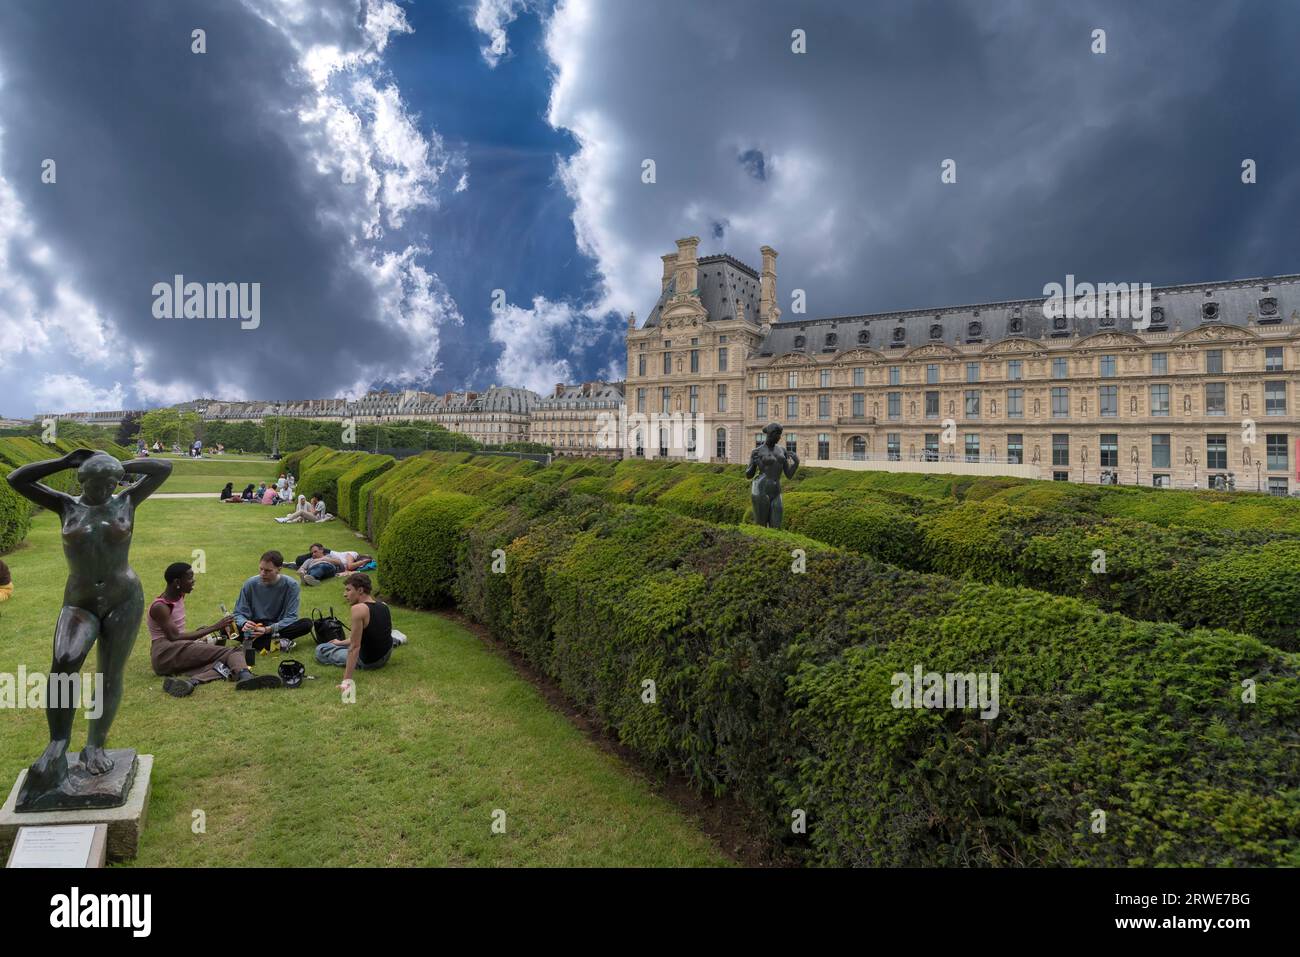 Junge Menschen auf den Grünflächen vor dem Louvre, Paris, Frankreich Stockfoto